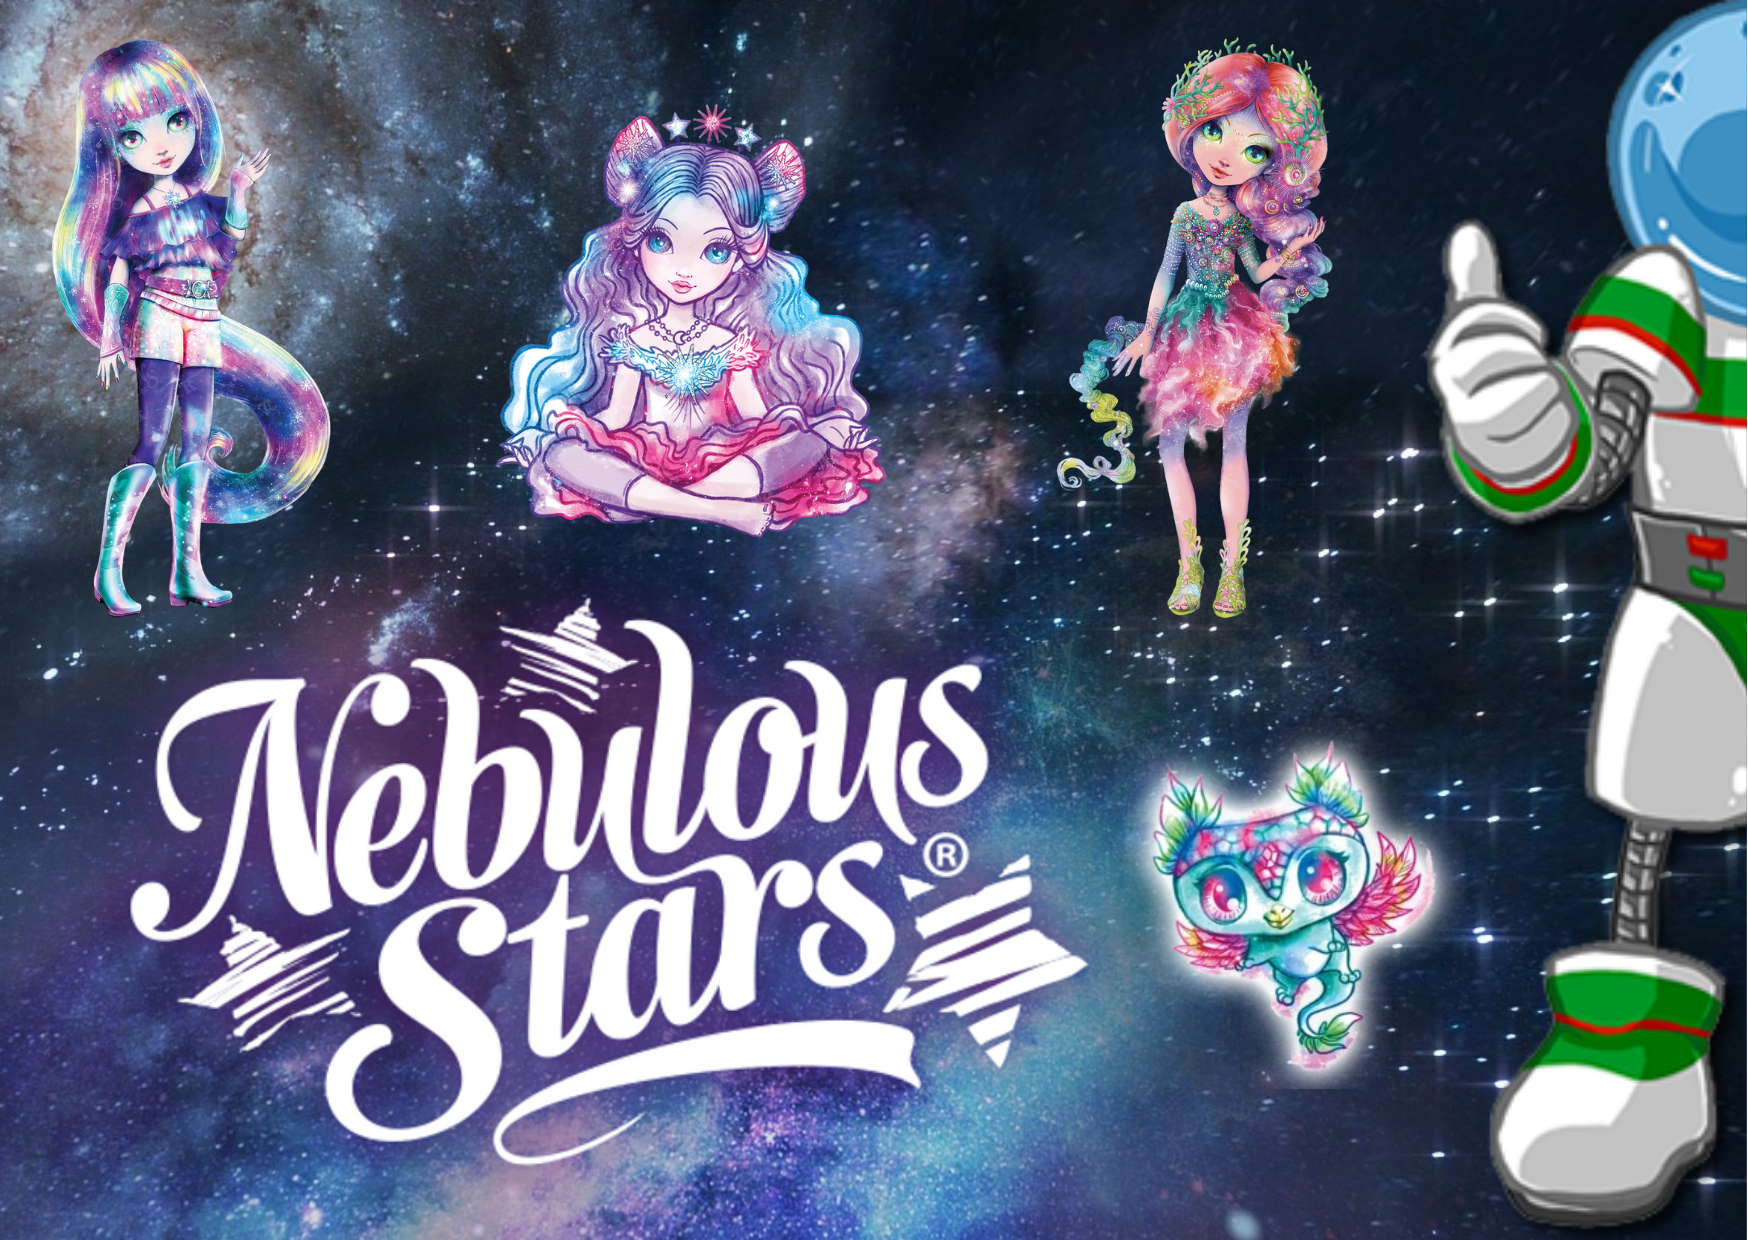 El Universo mágico Nebulous Stars llega a Astrolibros - Astrolibros